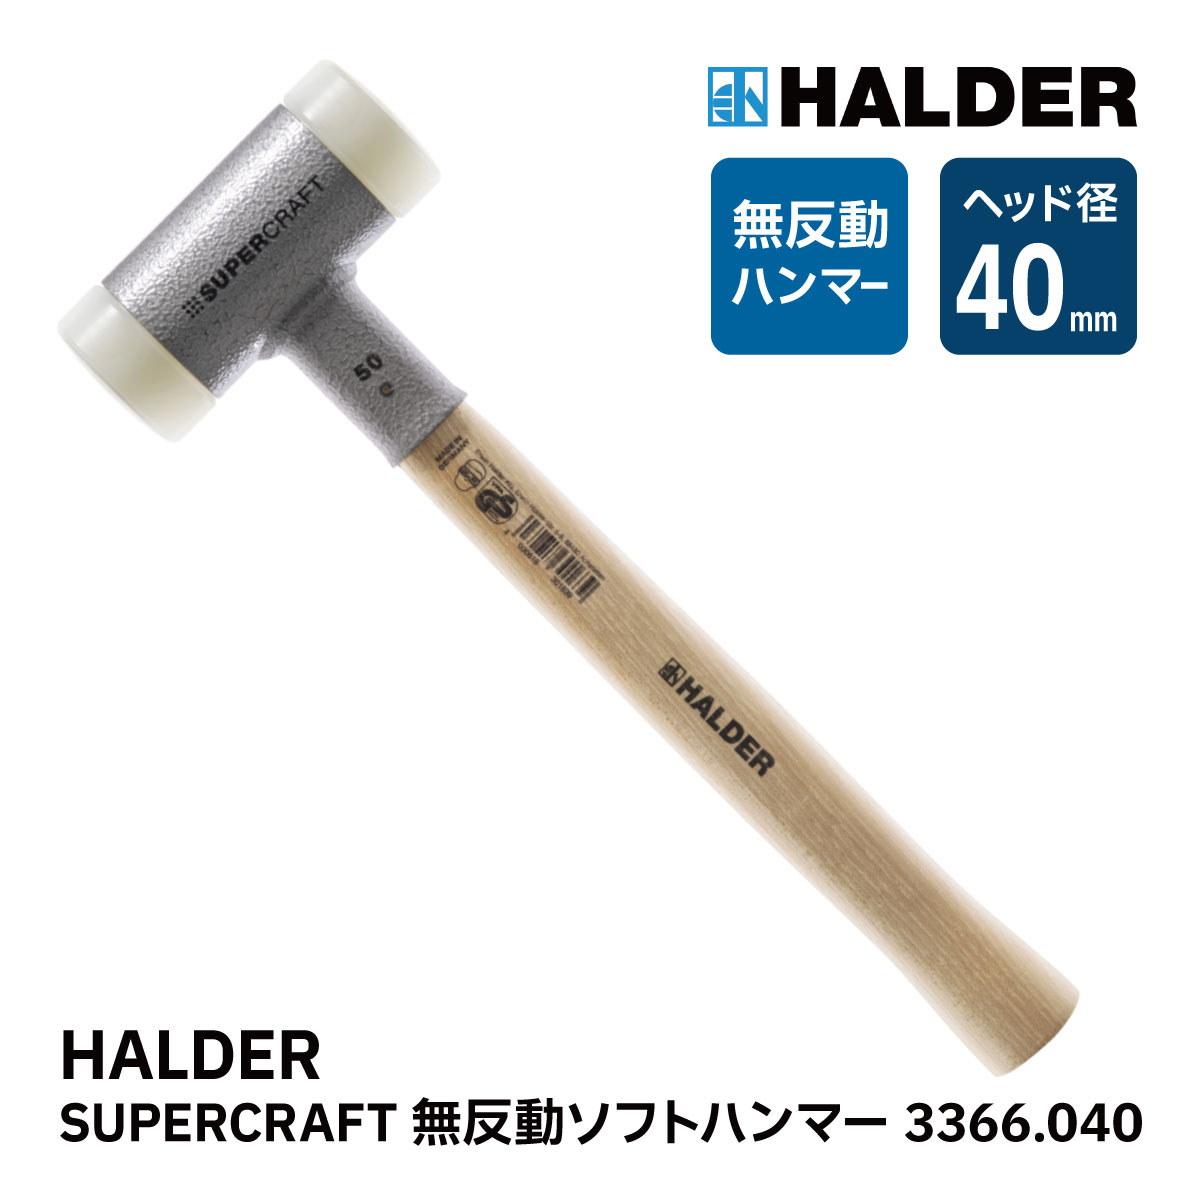 BAHCO(バーコ) Shock-less Hammer 無振動ハンマー 3625PU-50 【待望